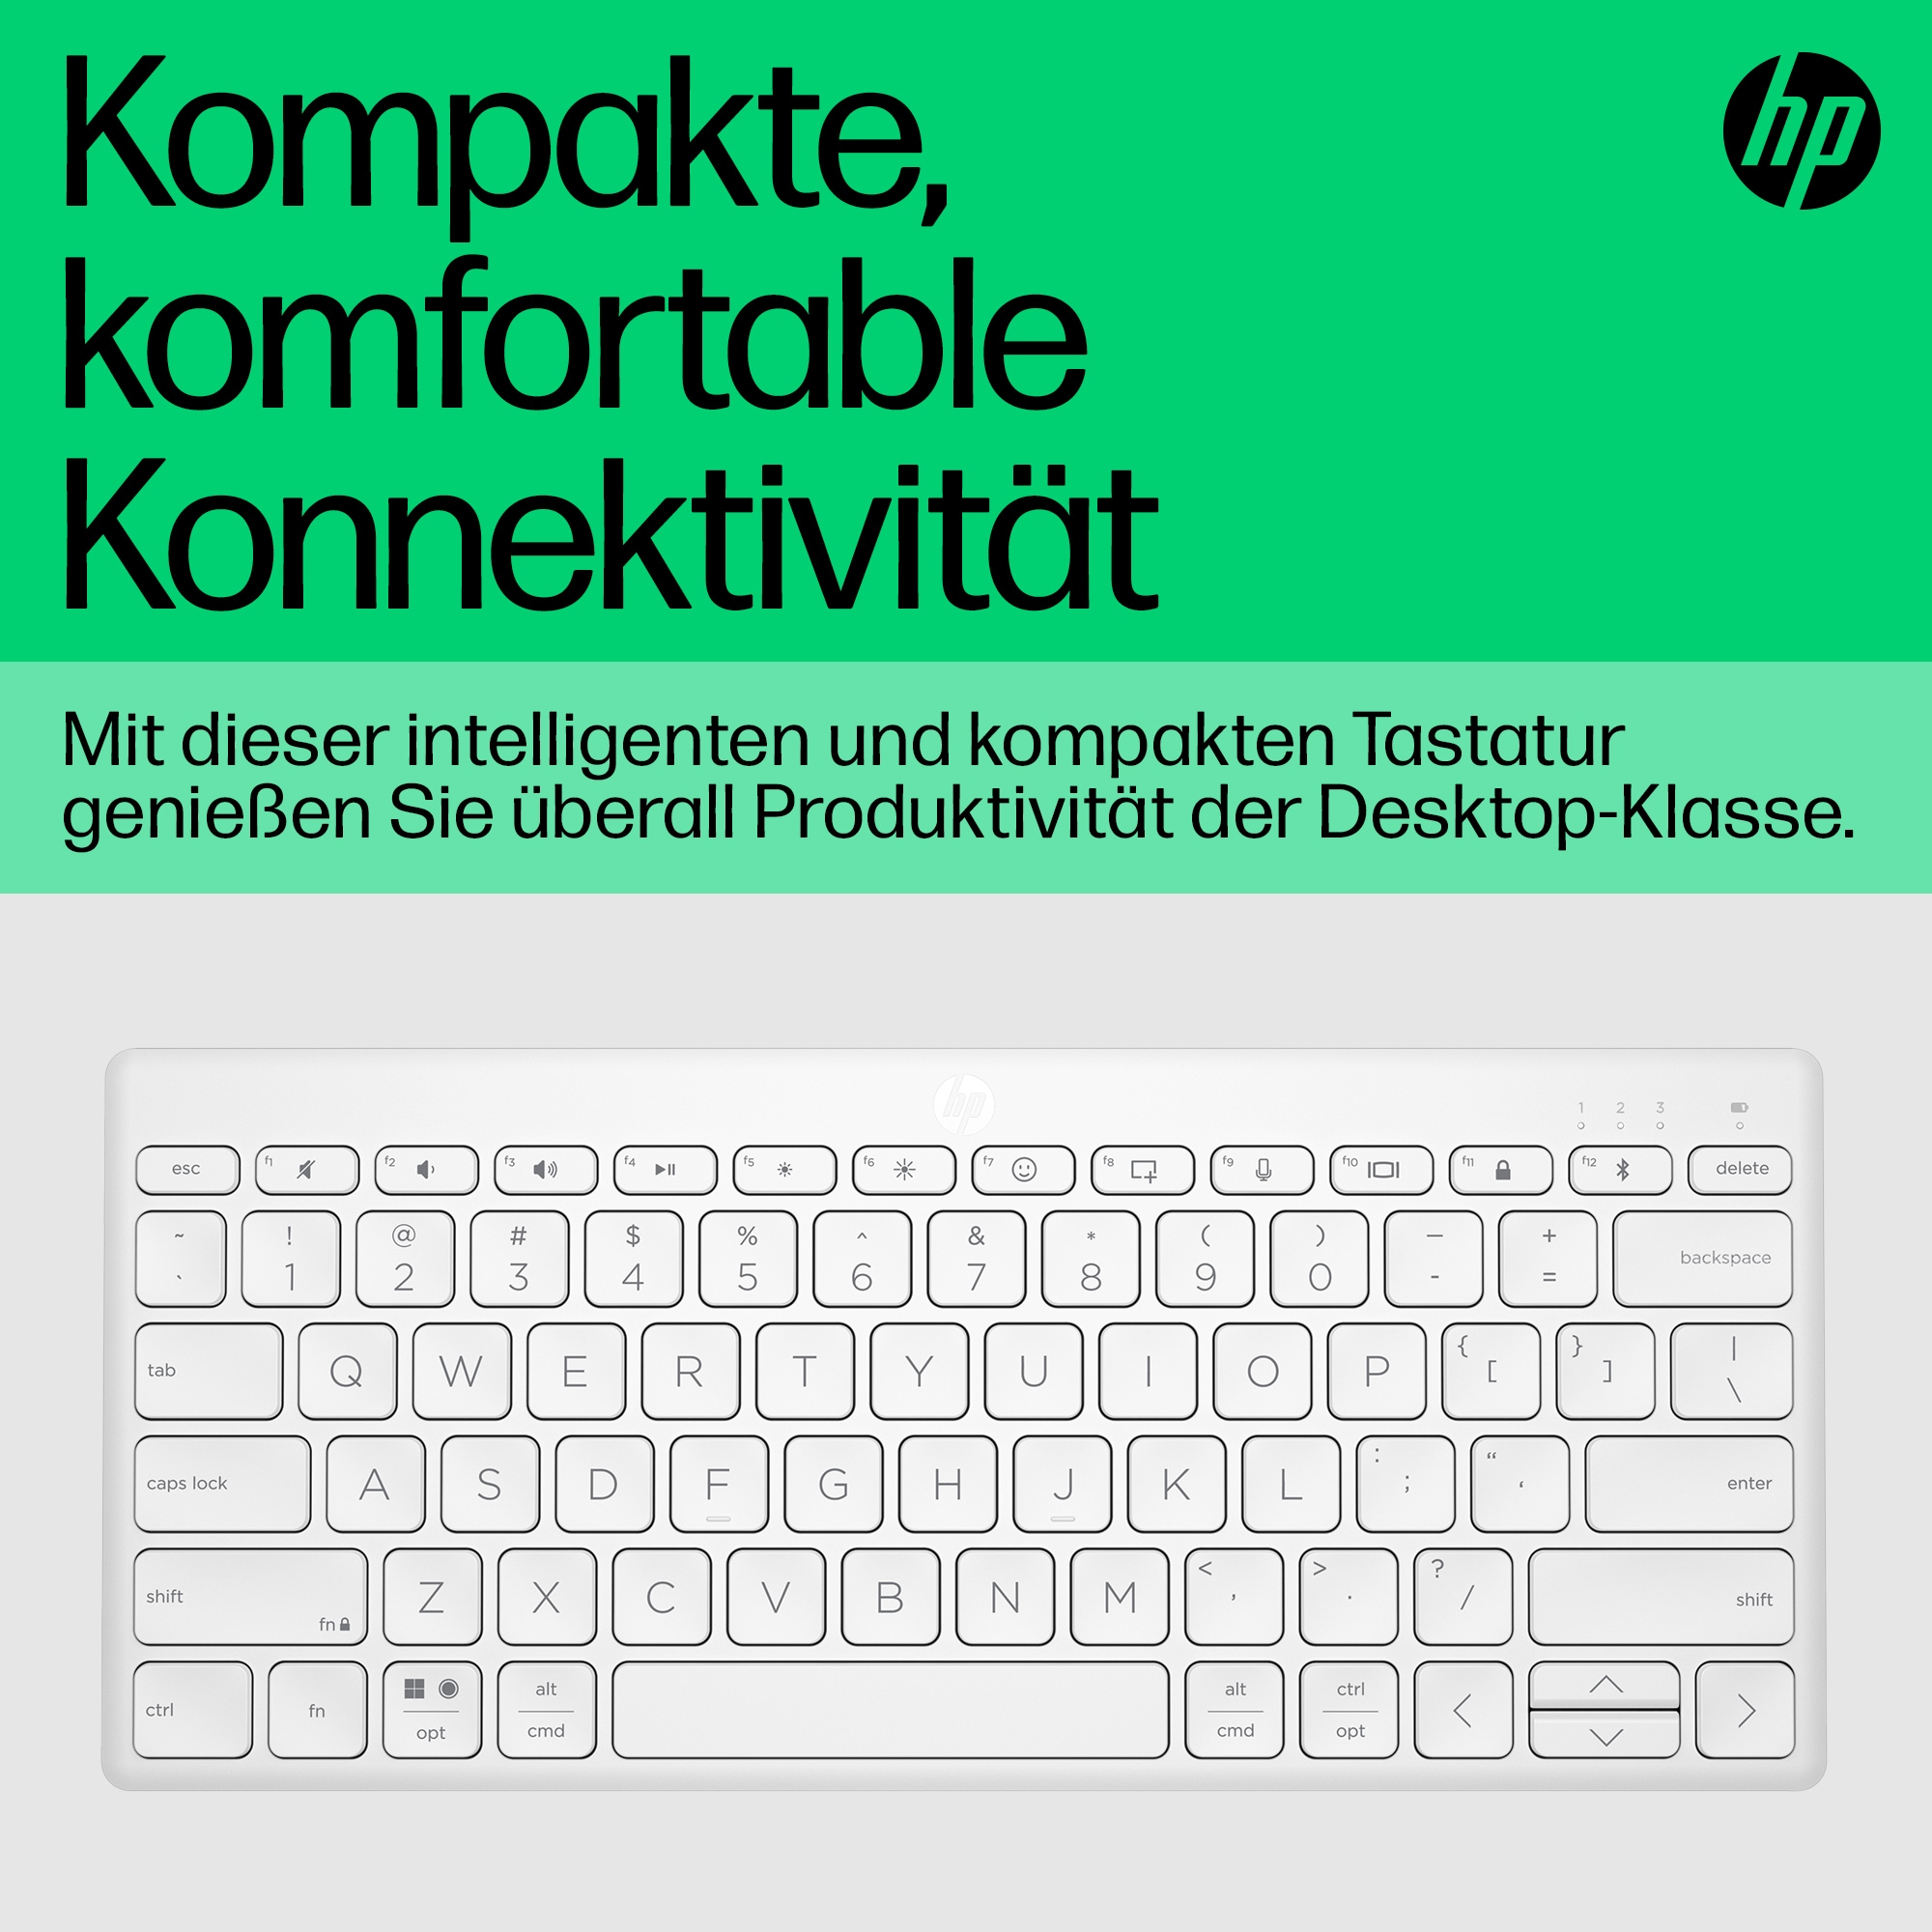 HP 350 Kompakte Bluetooth, Tastatur, Weiß Bluetooth, Mechanisch